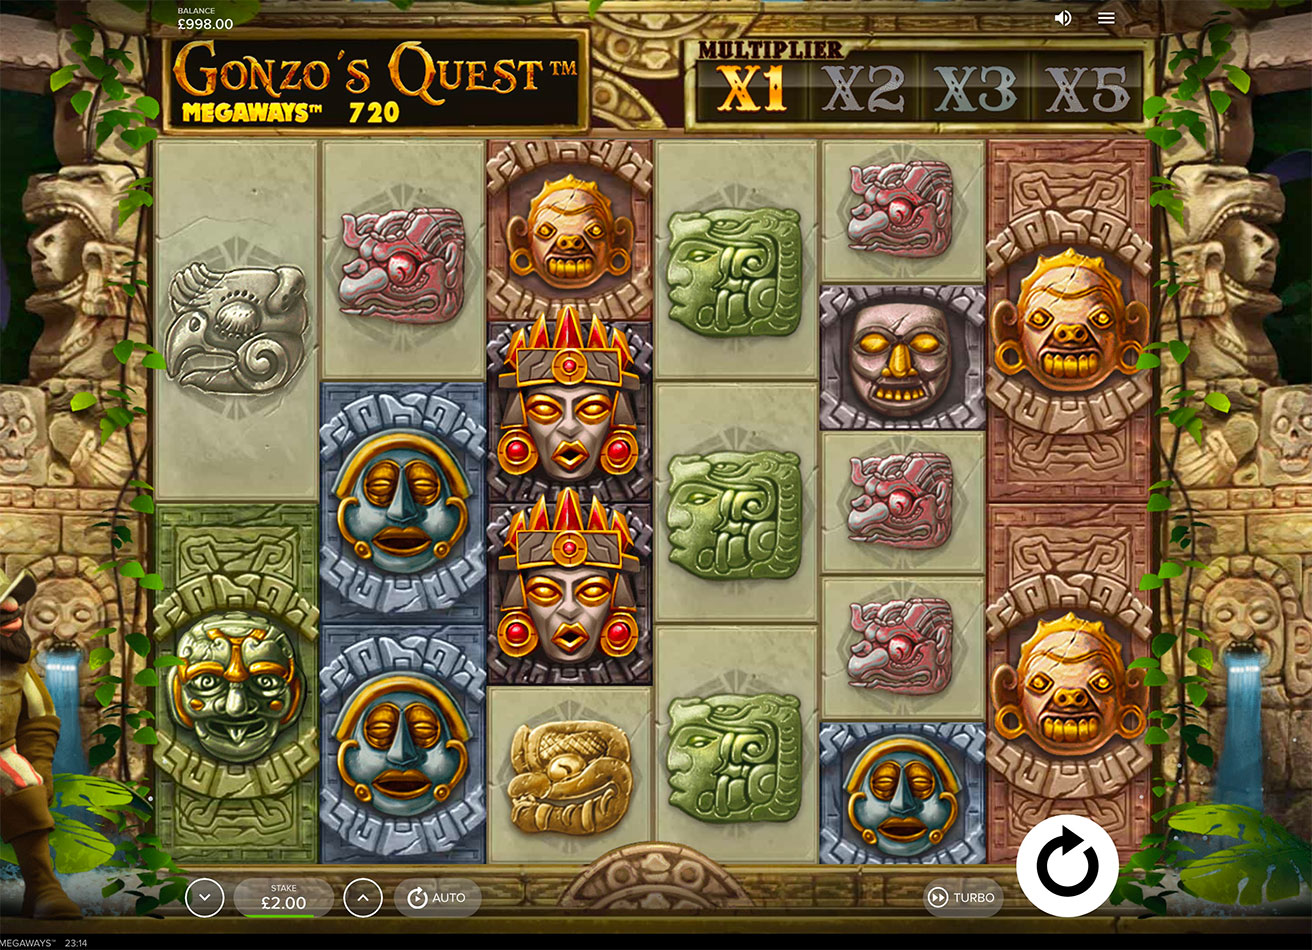 Gonzo’s Quest Megaways Pokie